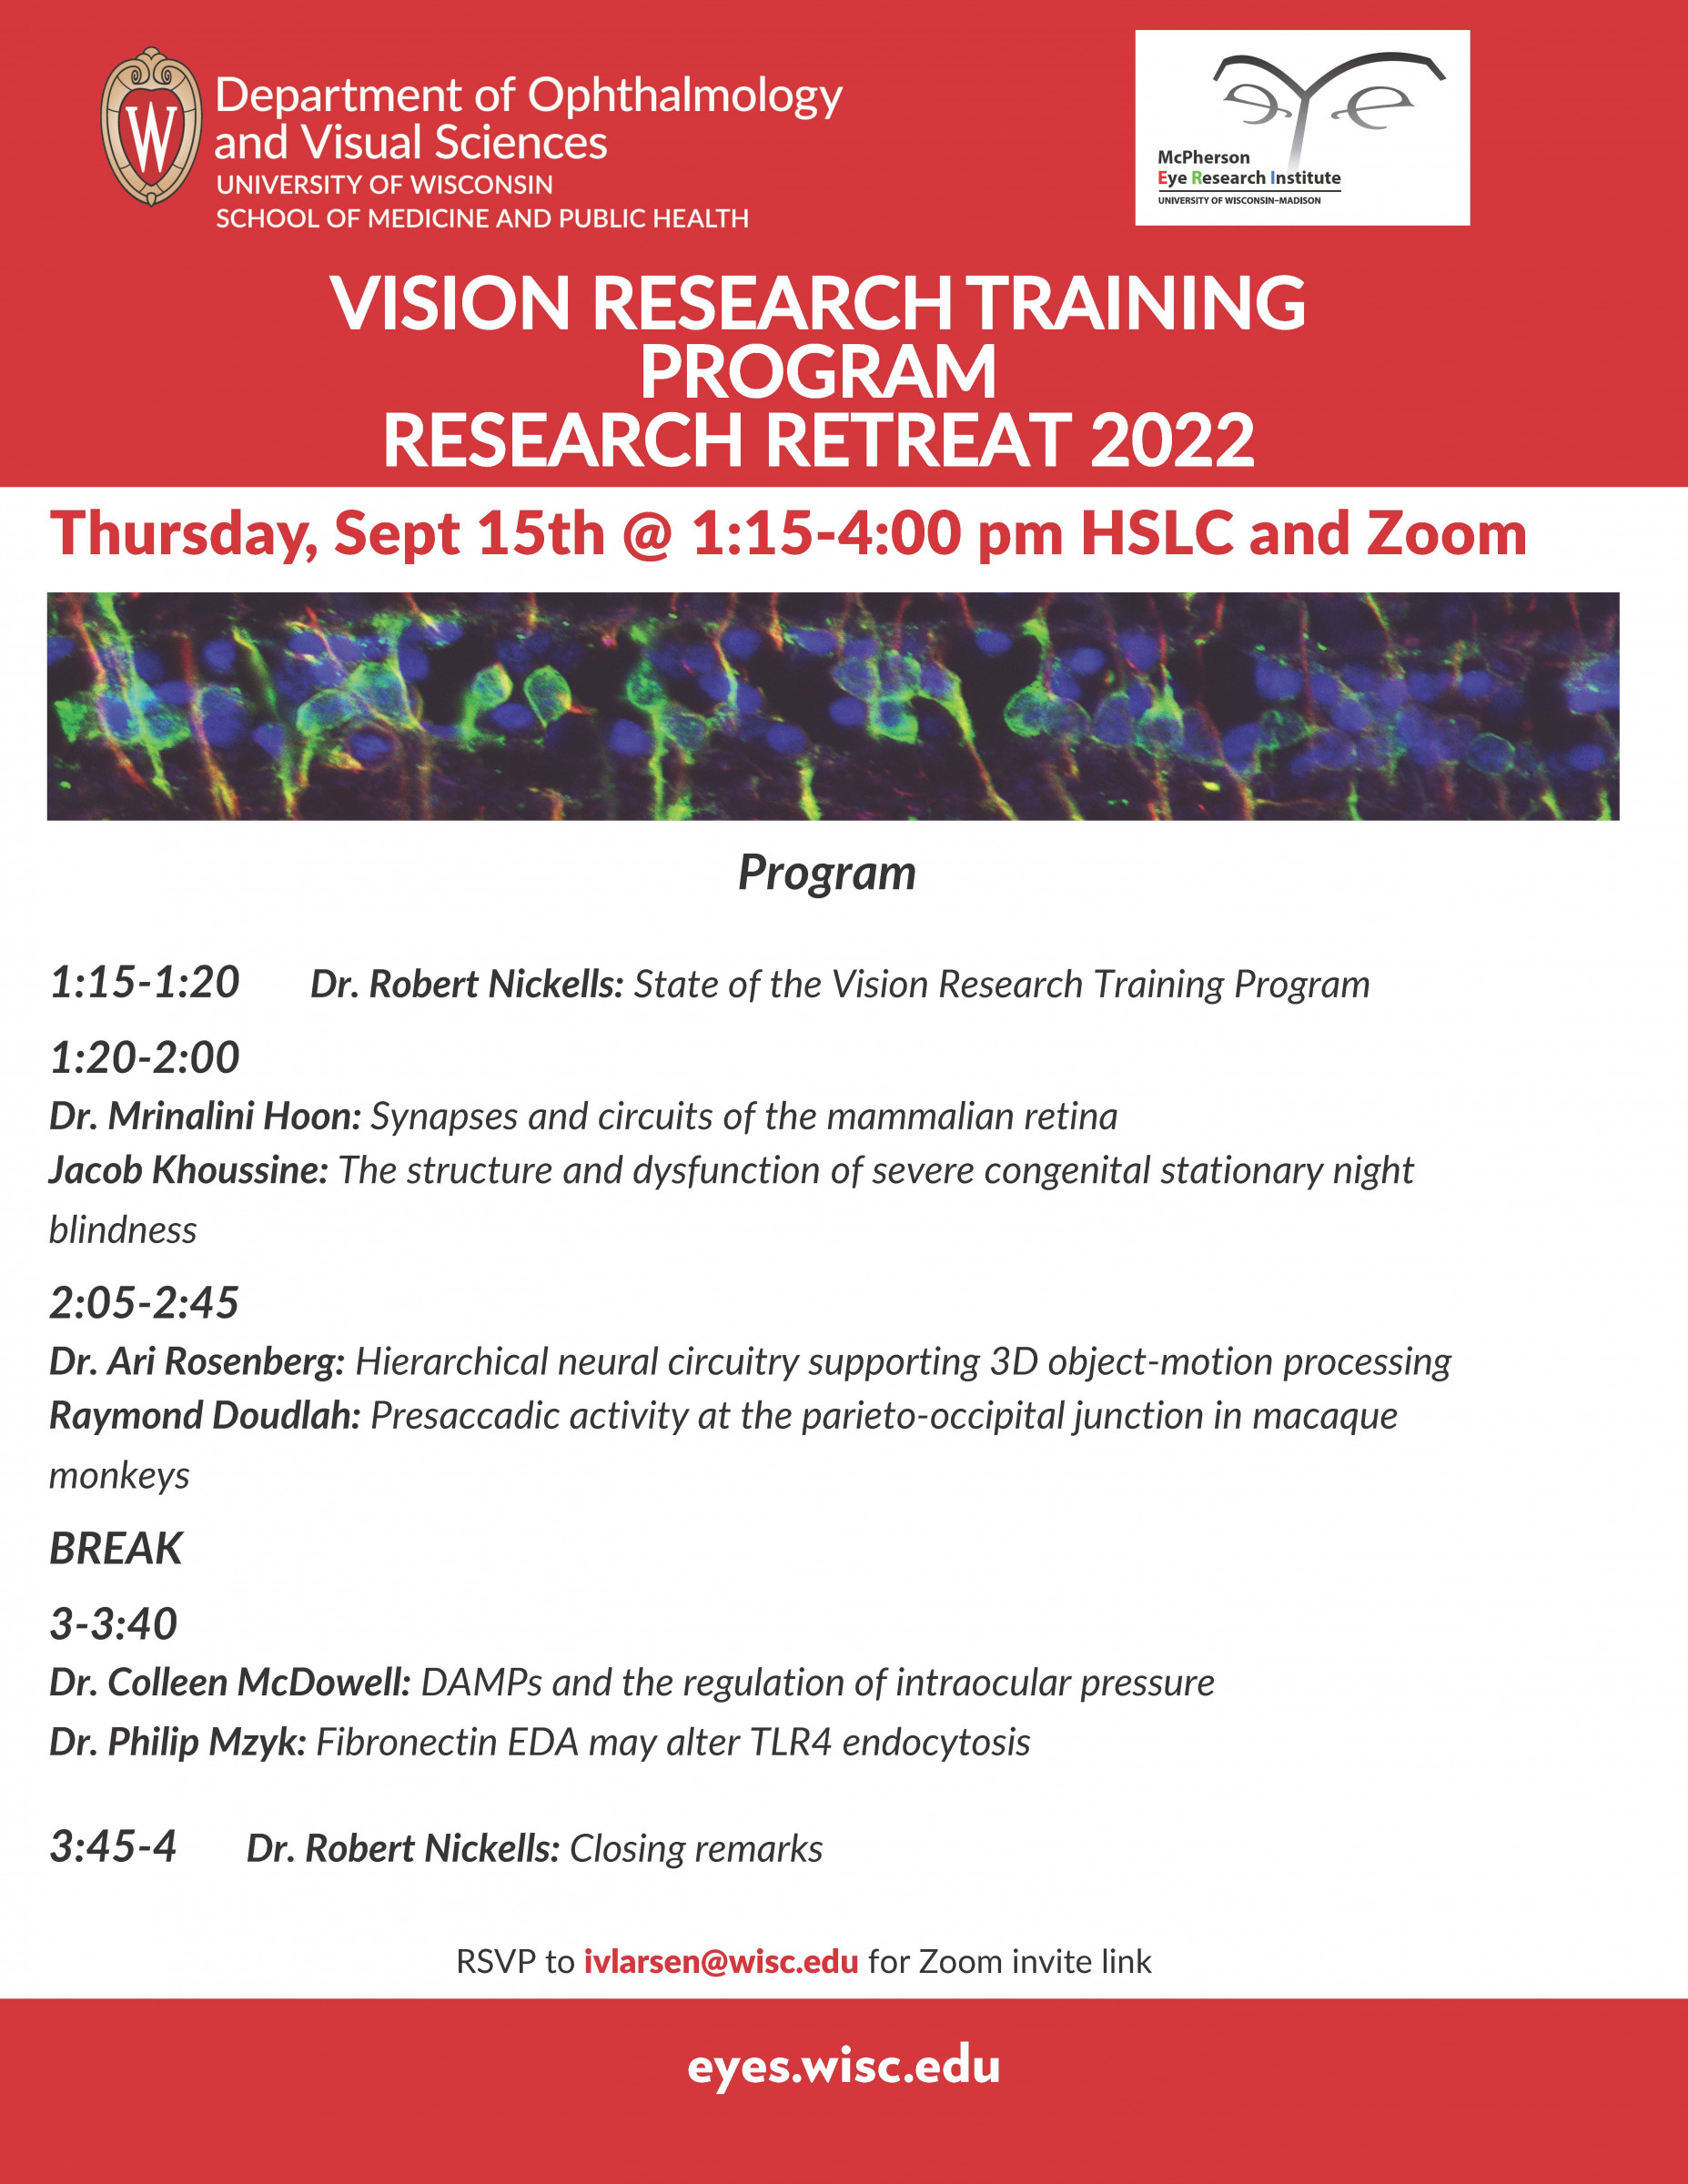 Vision Research Update Seminar 2022 Research Retreat